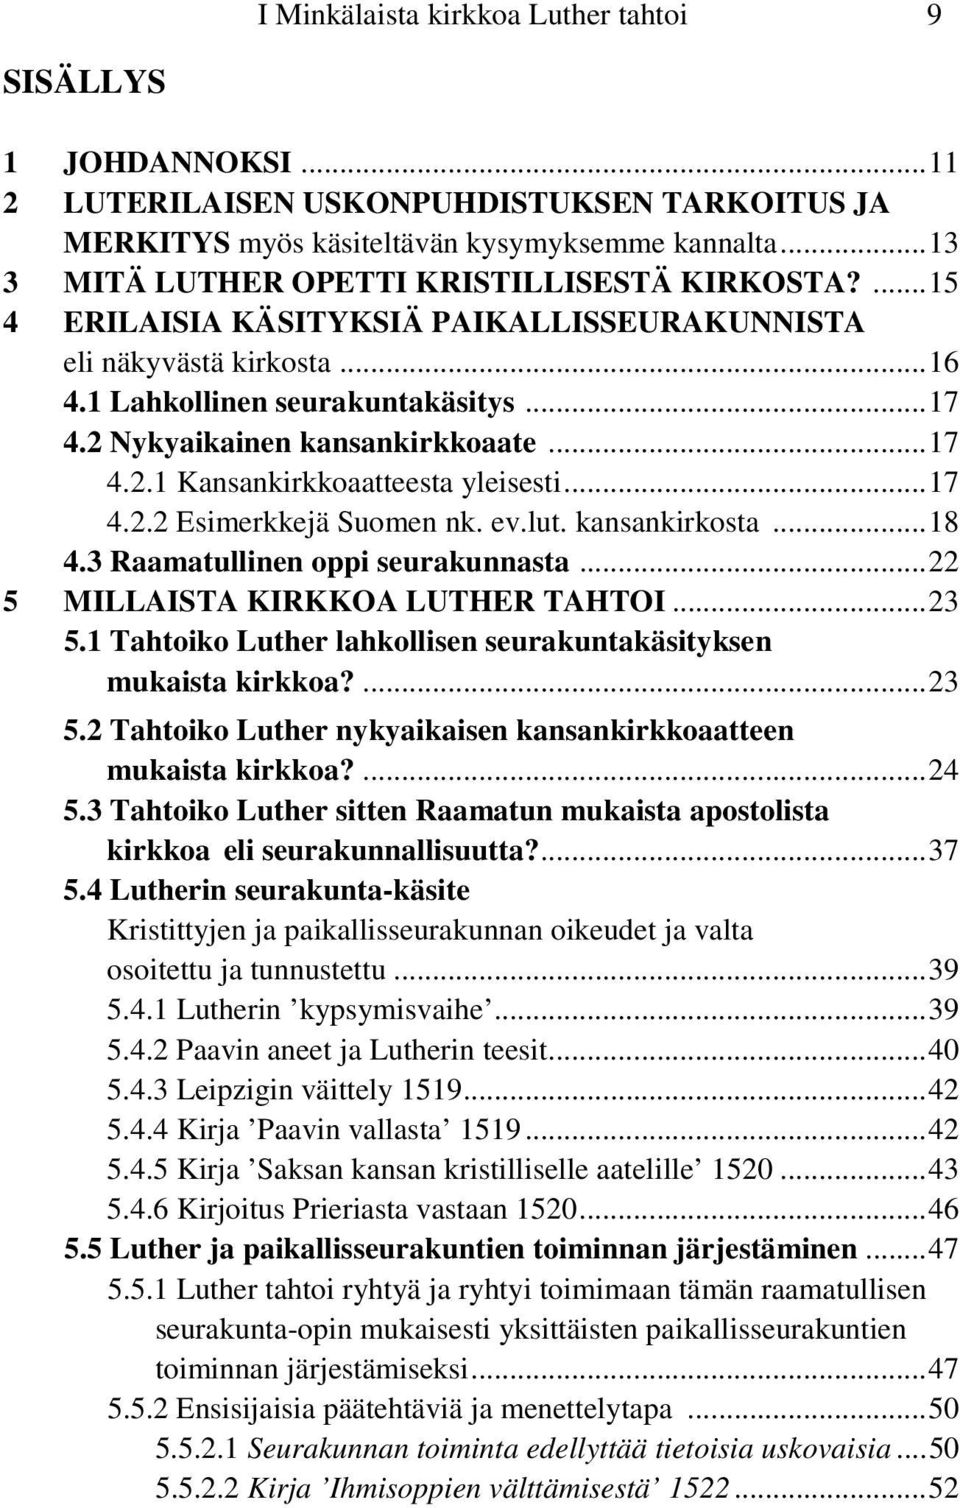 2 Nykyaikainen kansankirkkoaate...17 4.2.1 Kansankirkkoaatteesta yleisesti...17 4.2.2 Esimerkkejä Suomen nk. ev.lut. kansankirkosta...18 4.3 Raamatullinen oppi seurakunnasta.